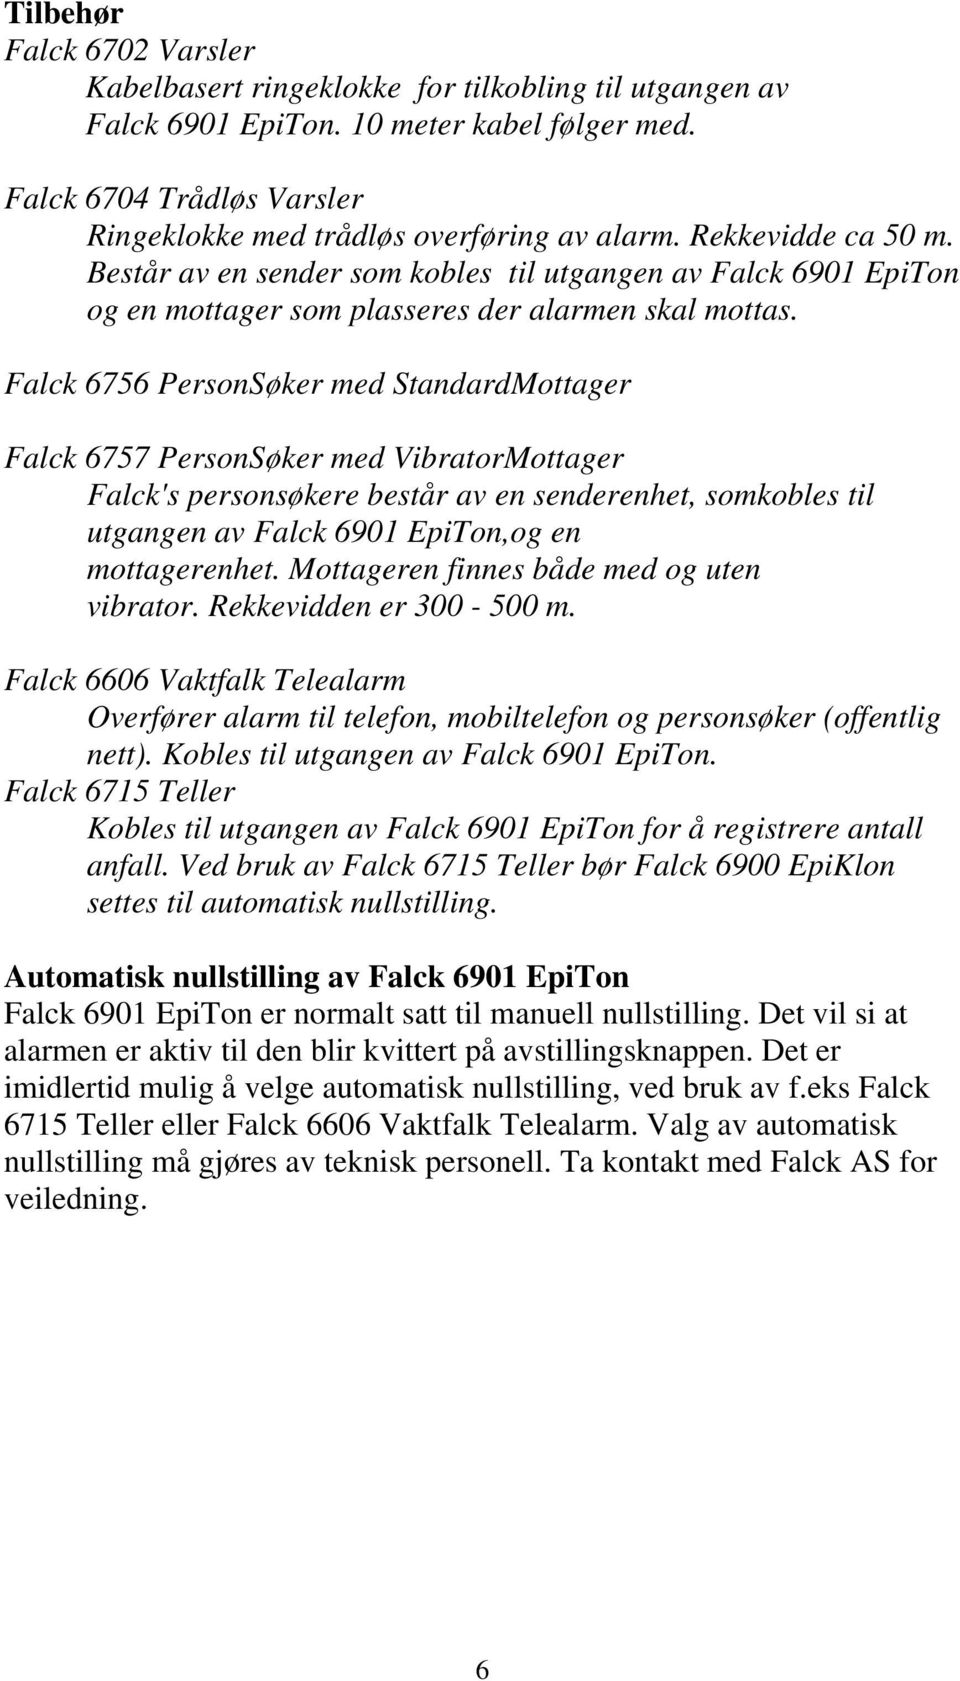 Falck 6756 PersonSøker med StandardMottager Falck 6757 PersonSøker med VibratorMottager Falck's personsøkere består av en senderenhet, somkobles til utgangen av Falck 6901 EpiTon,og en mottagerenhet.